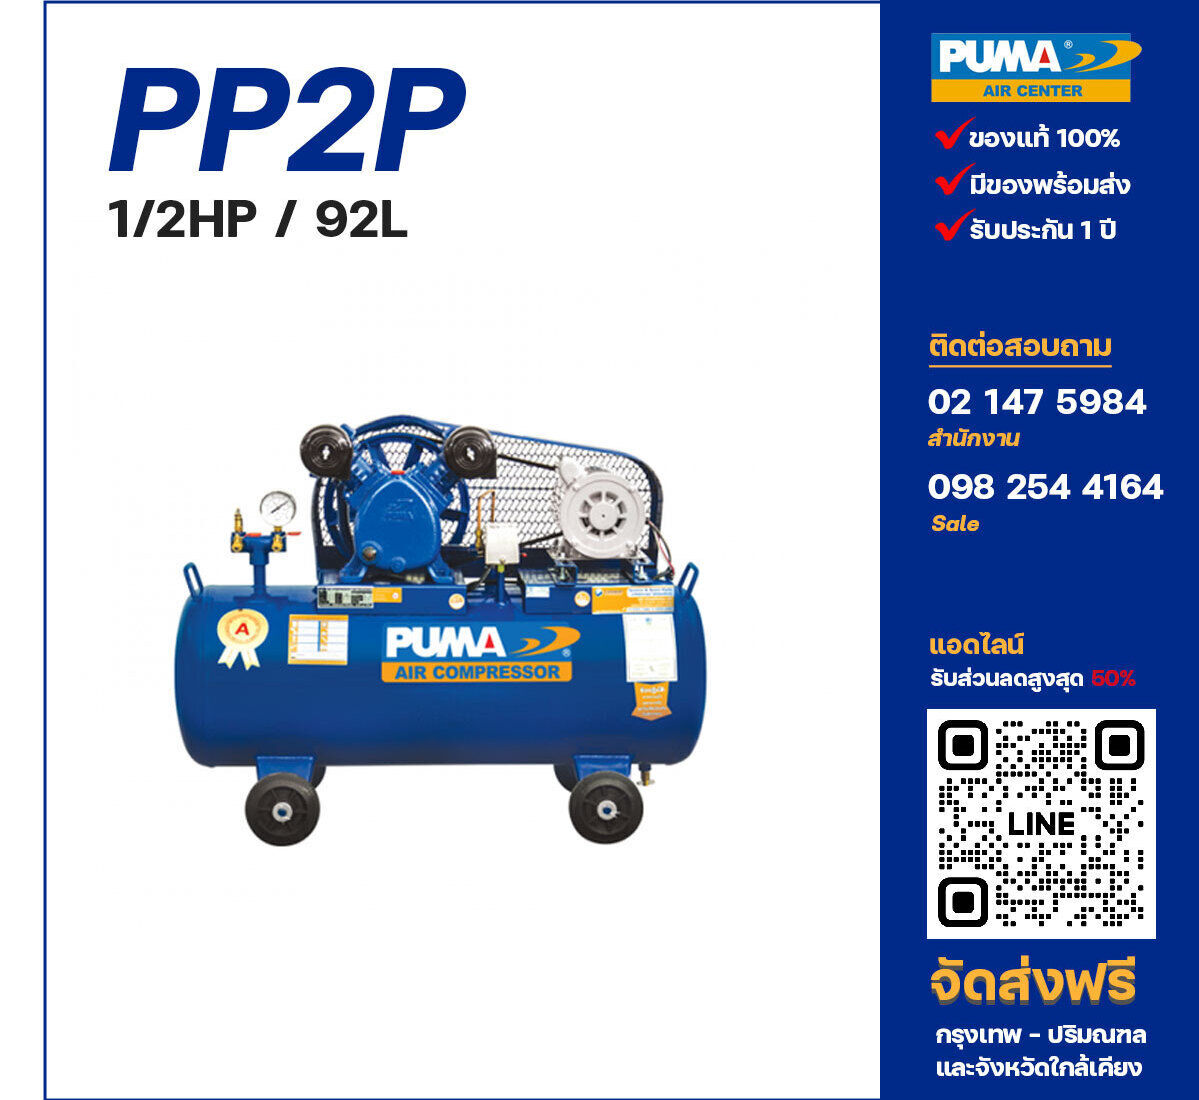 ปั๊มลมพูม่า PUMA PP2P-PPM220V ปั๊มลมลูกสูบ ขนาด 2 สูบ 1/2 แรงม้า 92 ลิตร PUMA พร้อมมอเตอร์ PUMA ไฟ 220V ส่งฟรี กรุงเทพฯ-ปริมณฑล รับประกัน 1 ปี